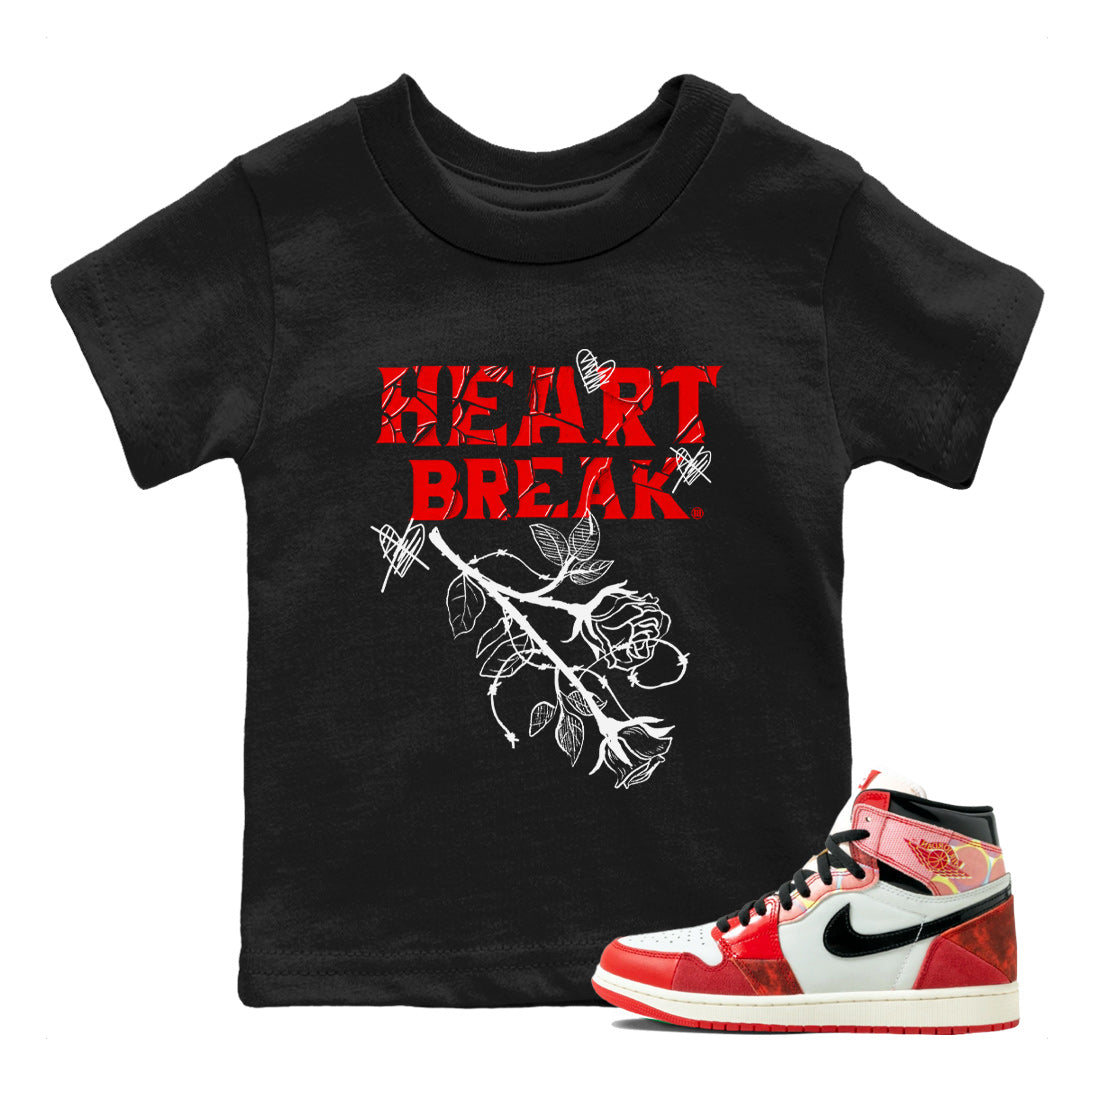 Air Jordan 1 Spider Man Sneaker Match Tees Heart Break Sneaker Release Tees Air Jordan 1 Spider Man T Shirt Kids Shirts Black 1